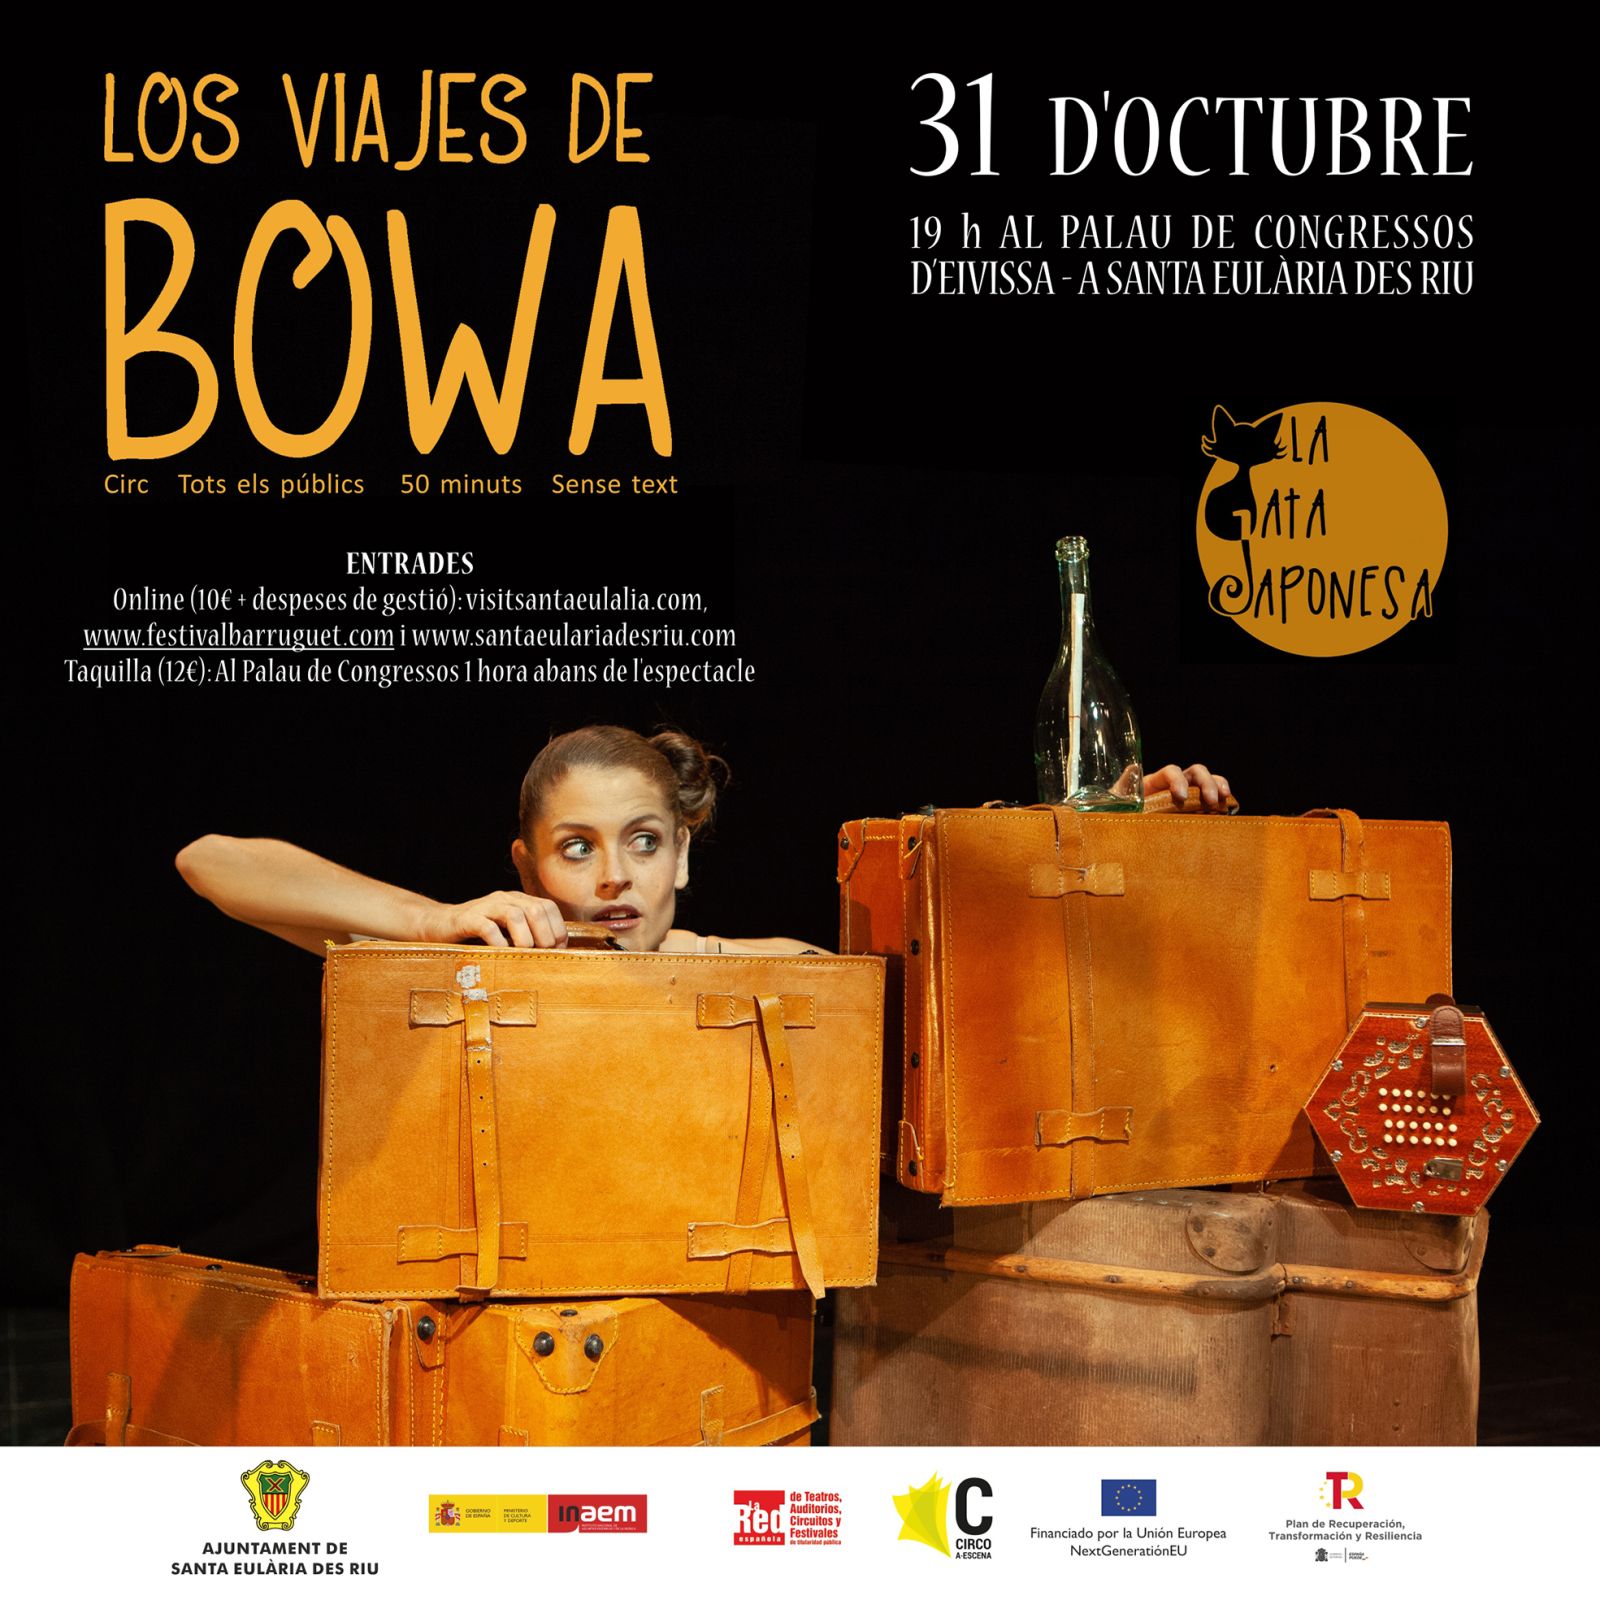 Los viajes de Bowa, del circuit Circ a Escena, el 31 d'octubre en el Palau de Congressos d'Eivissa